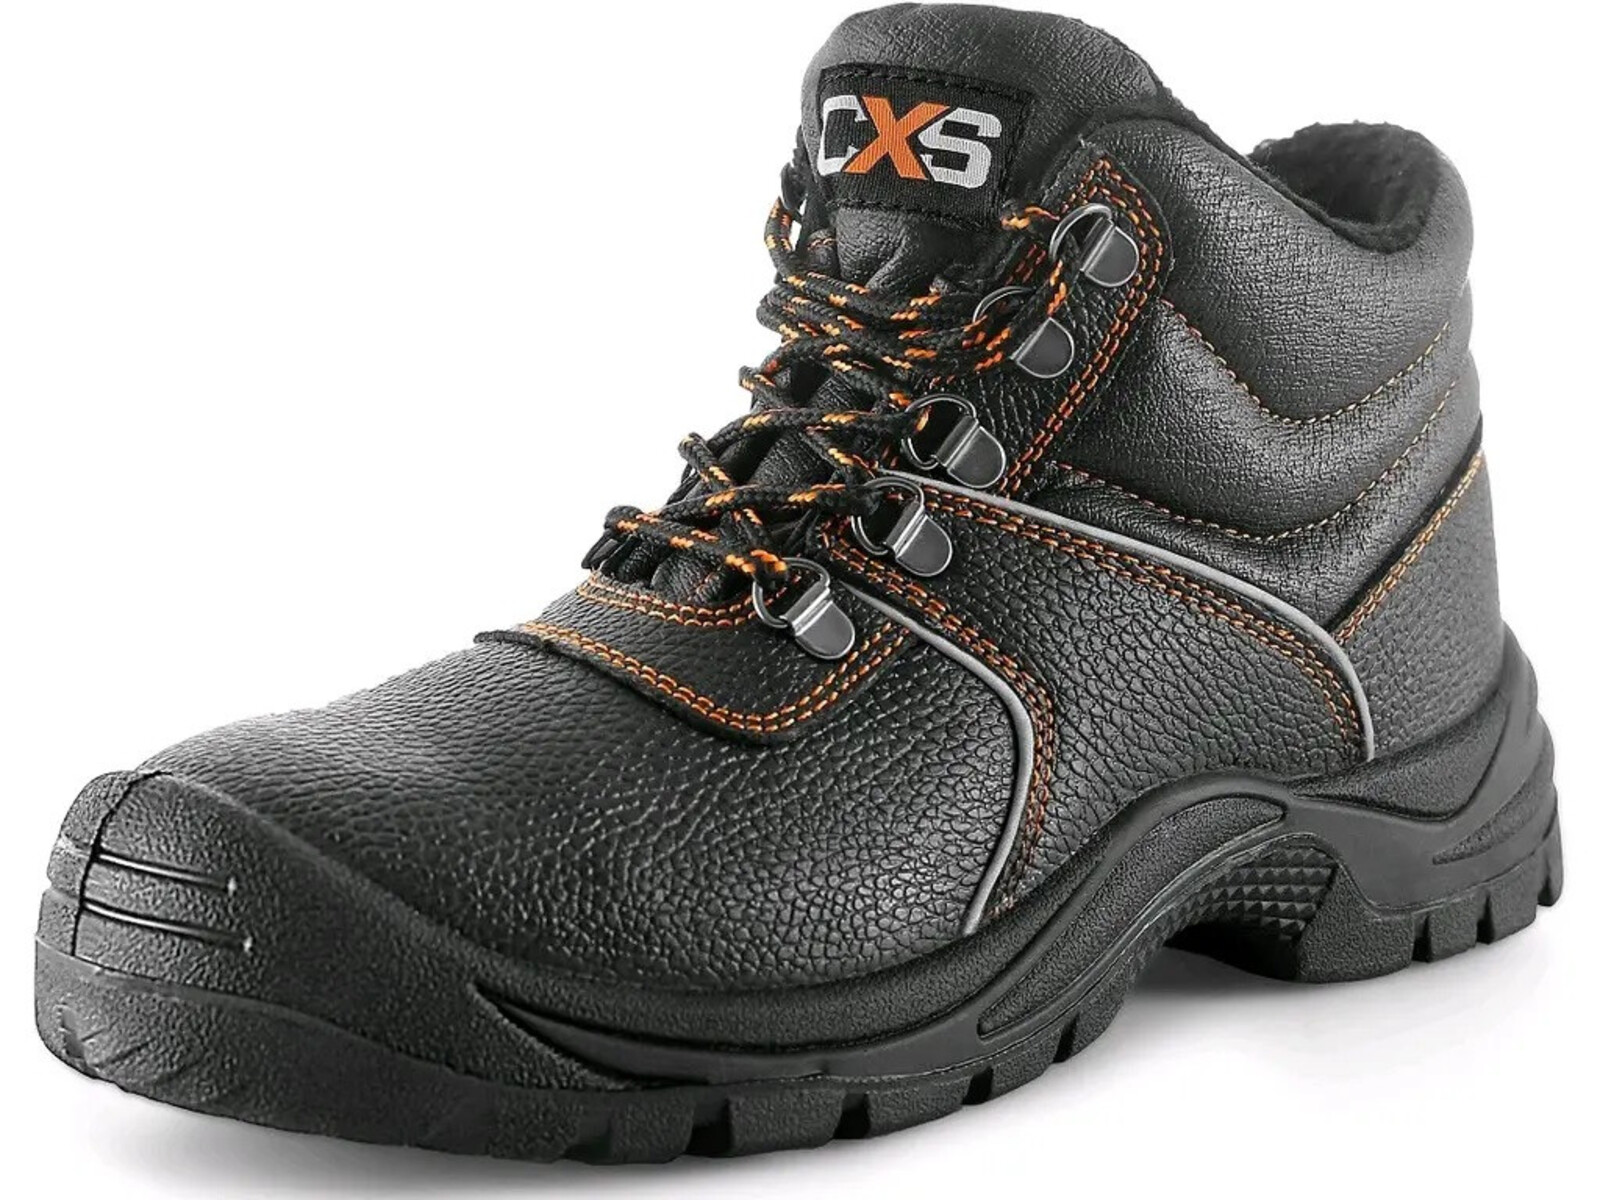 Zimná bezpečnostná členková obuv CXS Stone Apatit Winter S3 SRC - veľkosť: 44, farba: čierna/oranžová